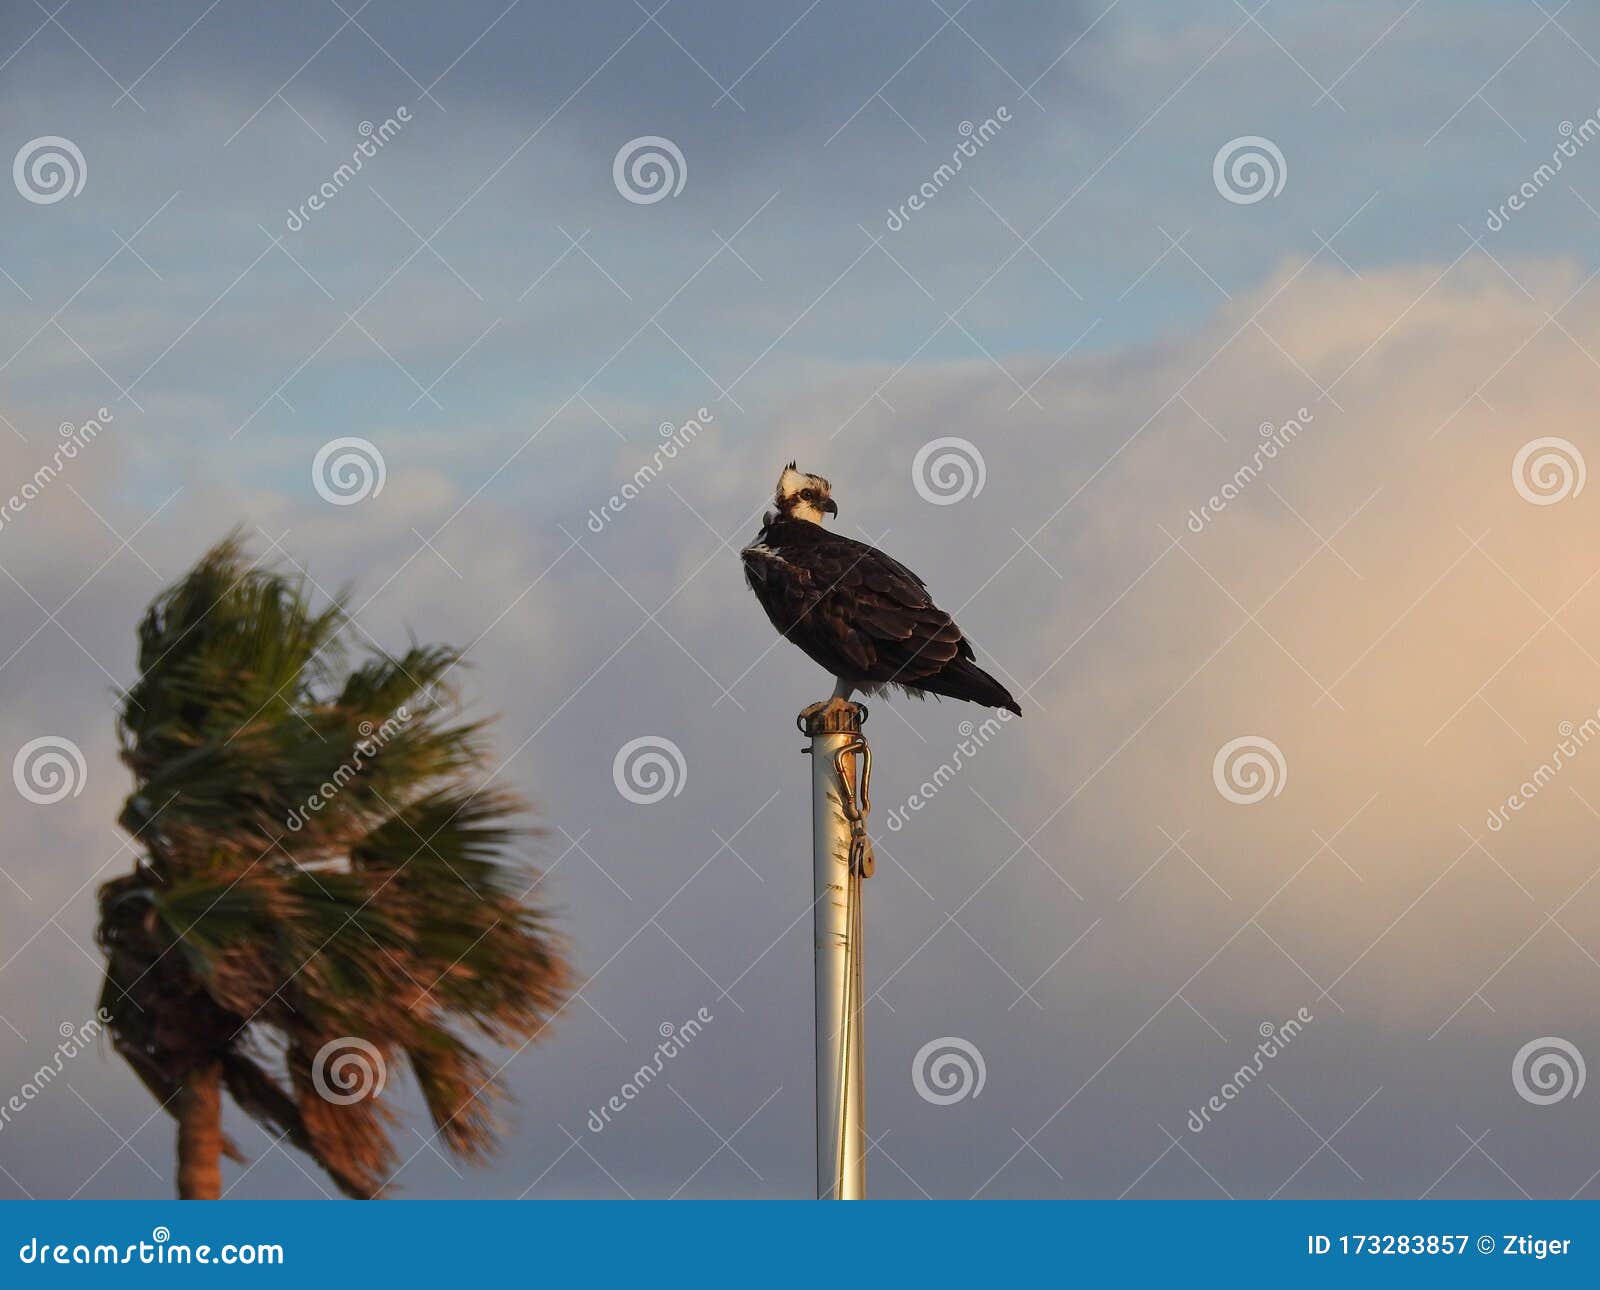 osprey sitting on flagpole